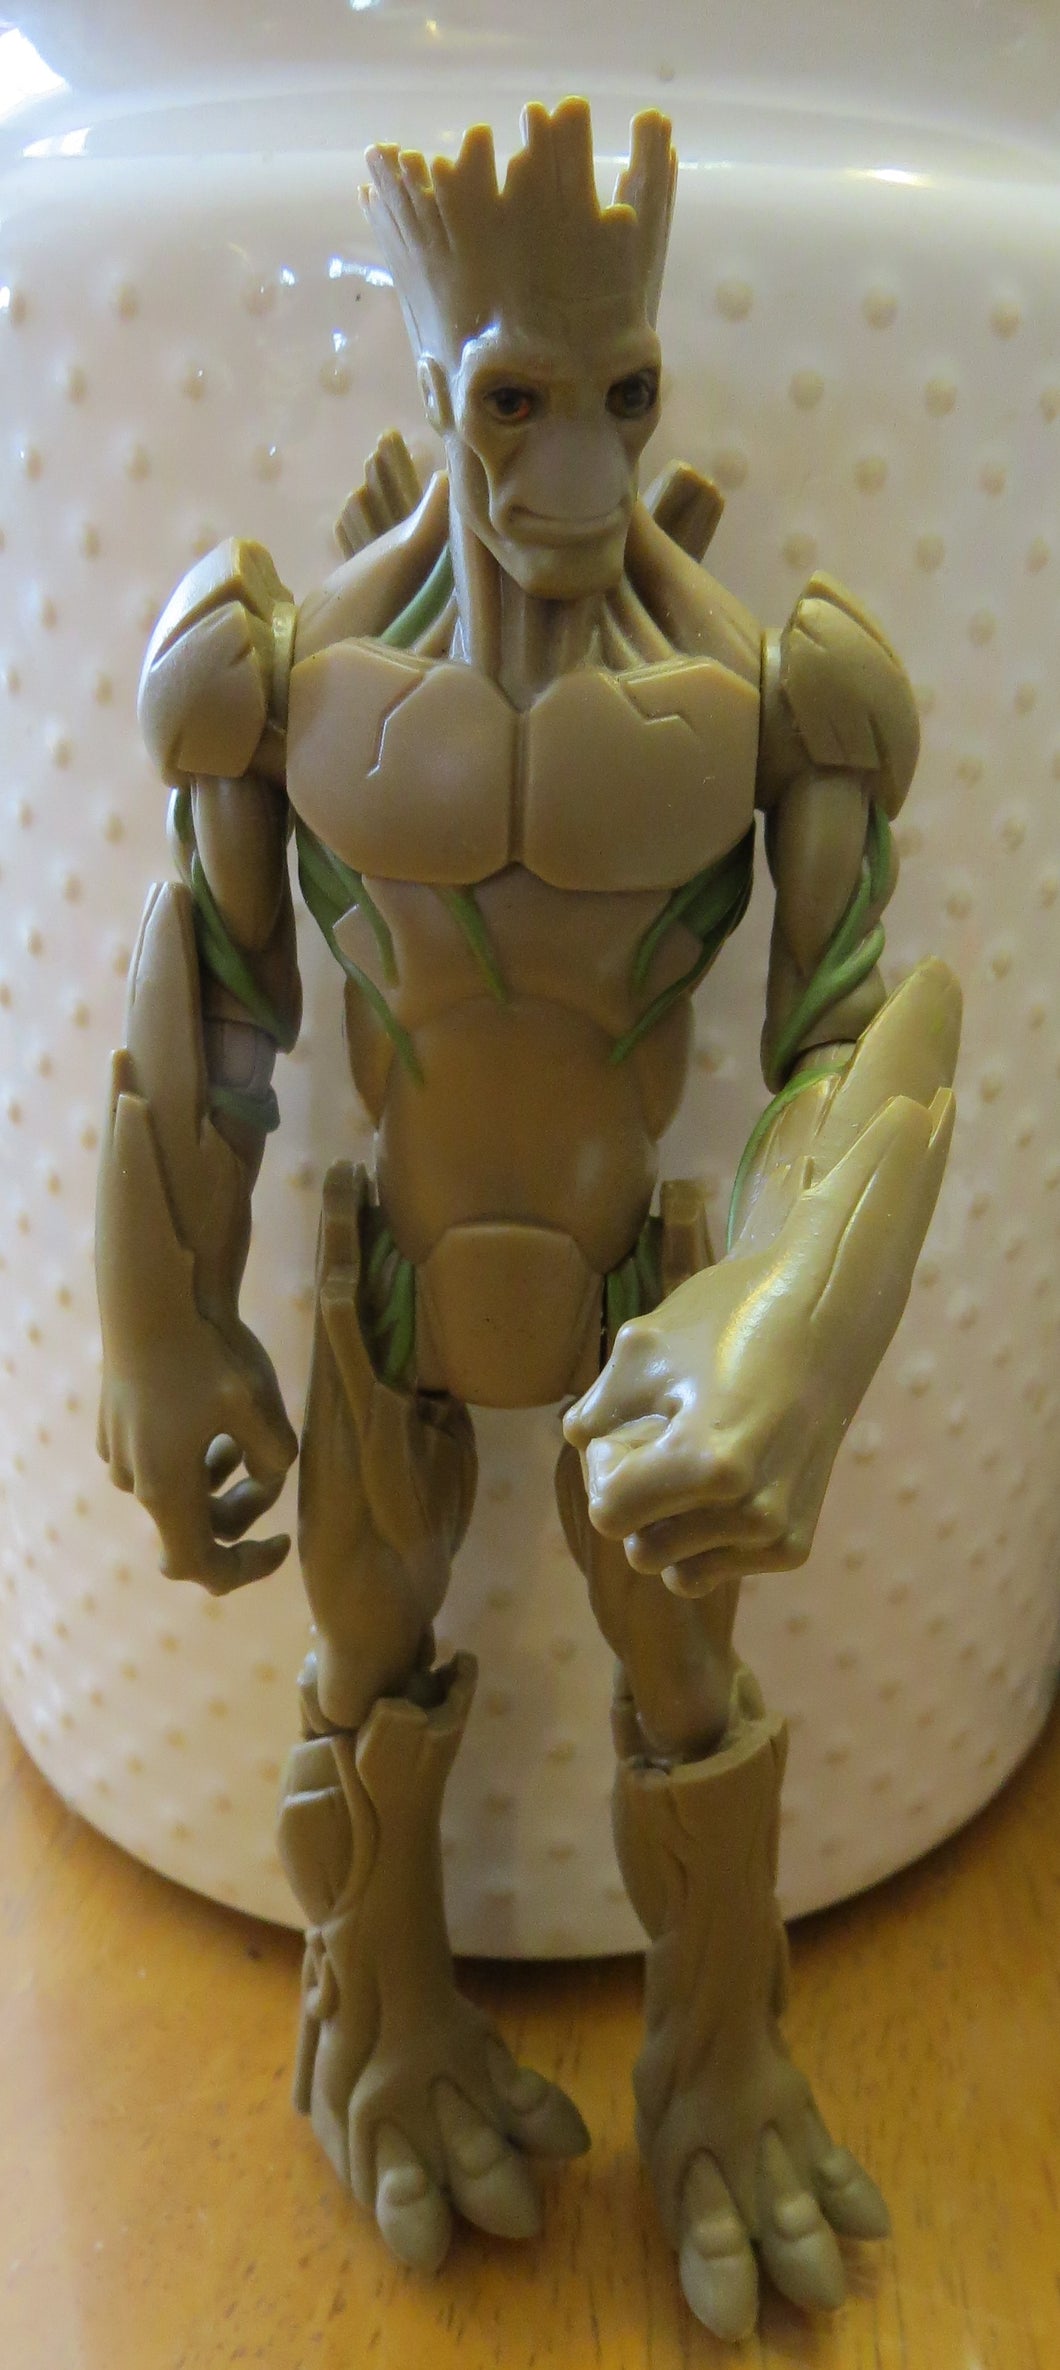 Marvel GROOT - figurine - 7 '' tall ACTION FIGURE